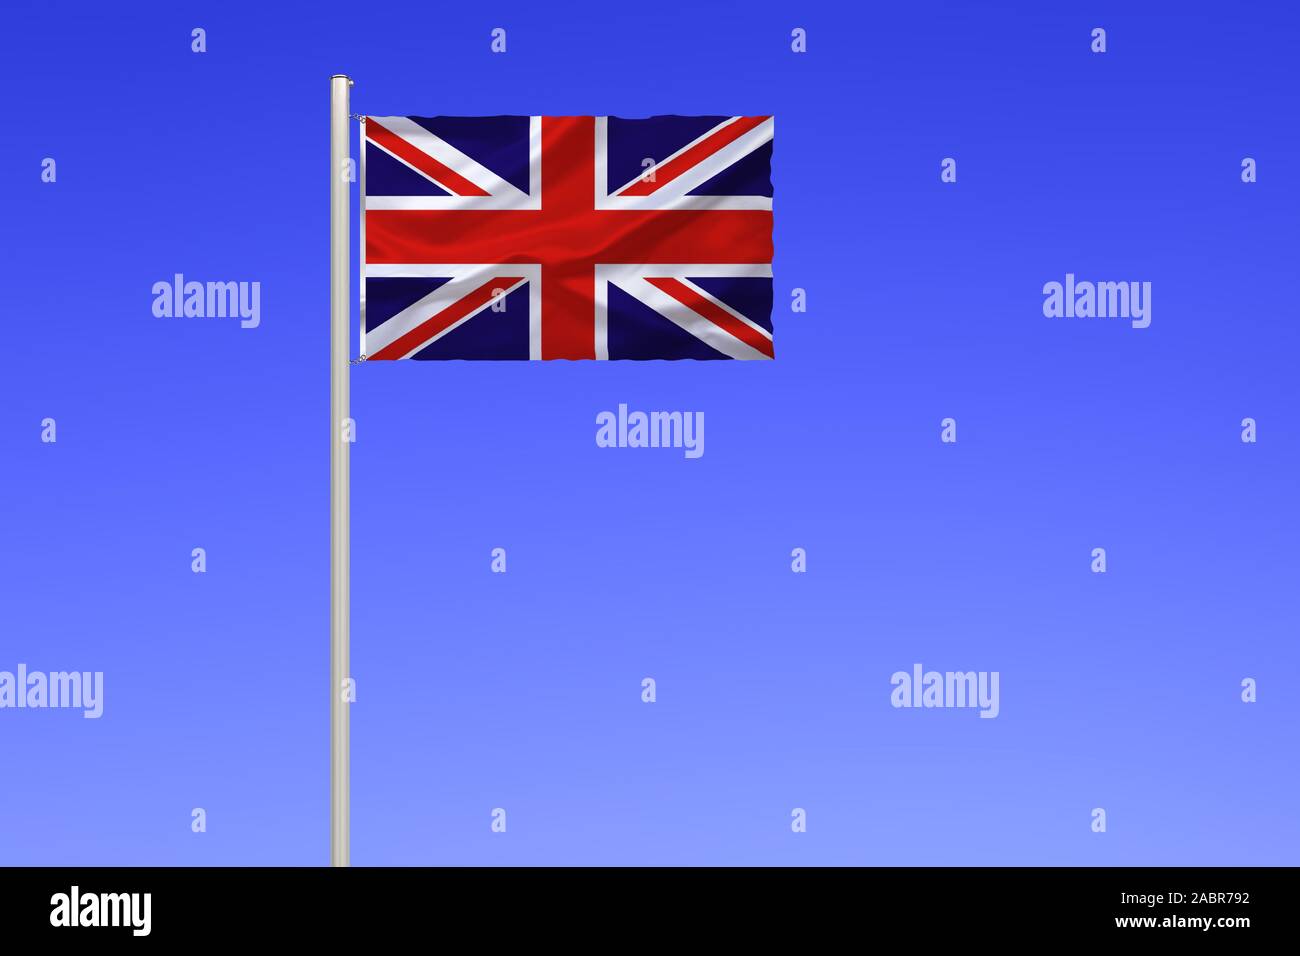 Flagge von Grossbritannien, Vereinigtes Koenigreich, Stock Photo